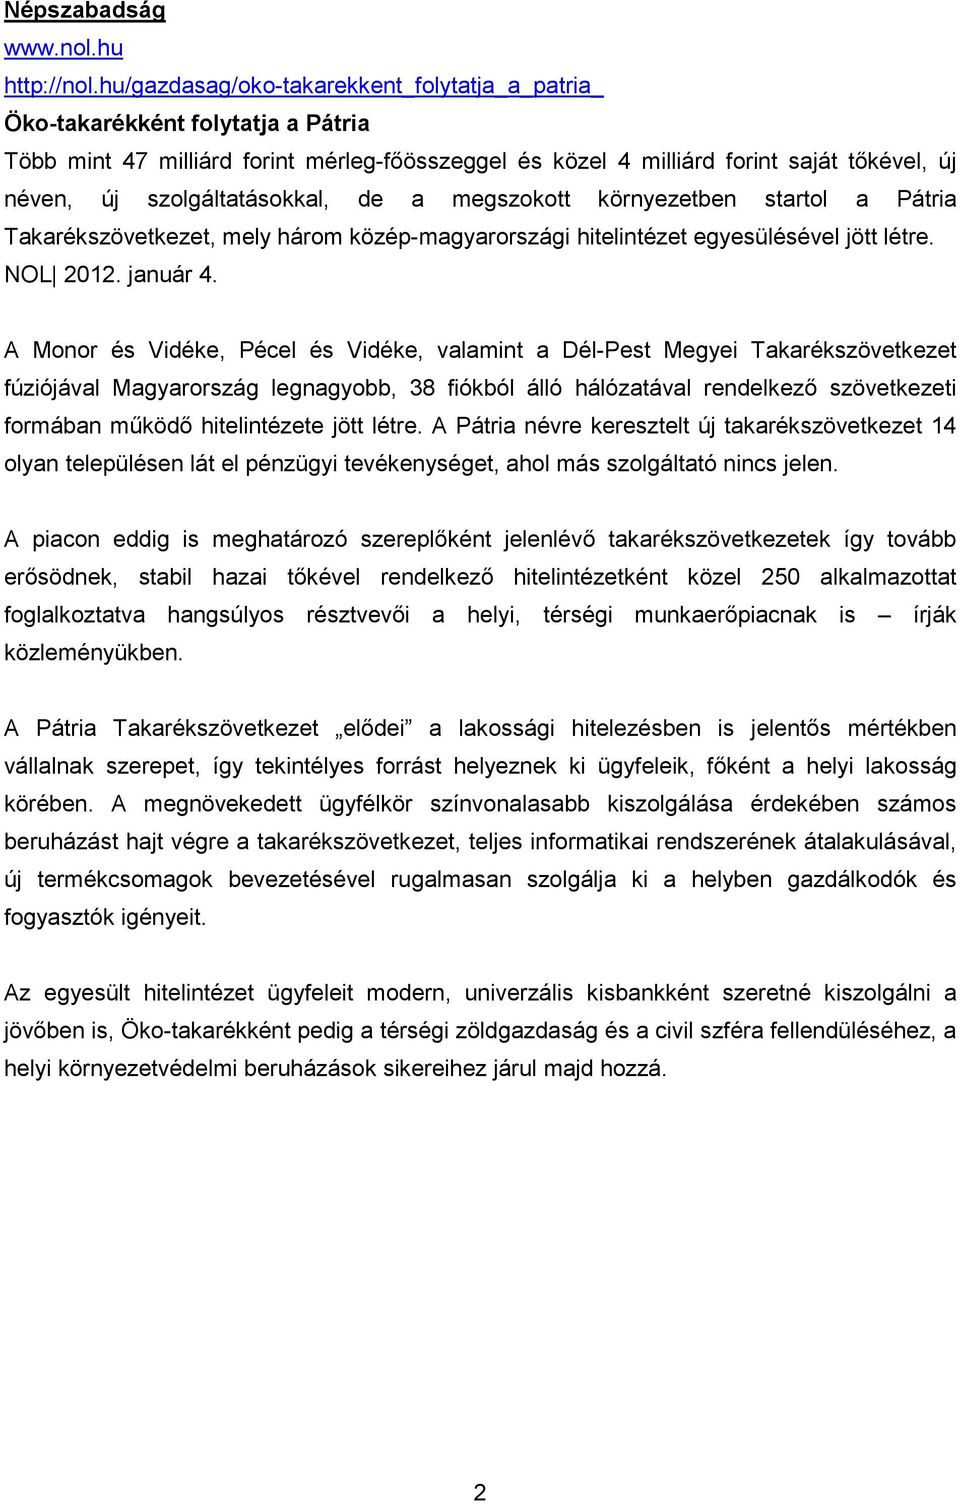 szolgáltatásokkal, de a megszokott környezetben startol a Pátria Takarékszövetkezet, mely három közép-magyarországi hitelintézet egyesülésével jött létre. NOL 2012. január 4.